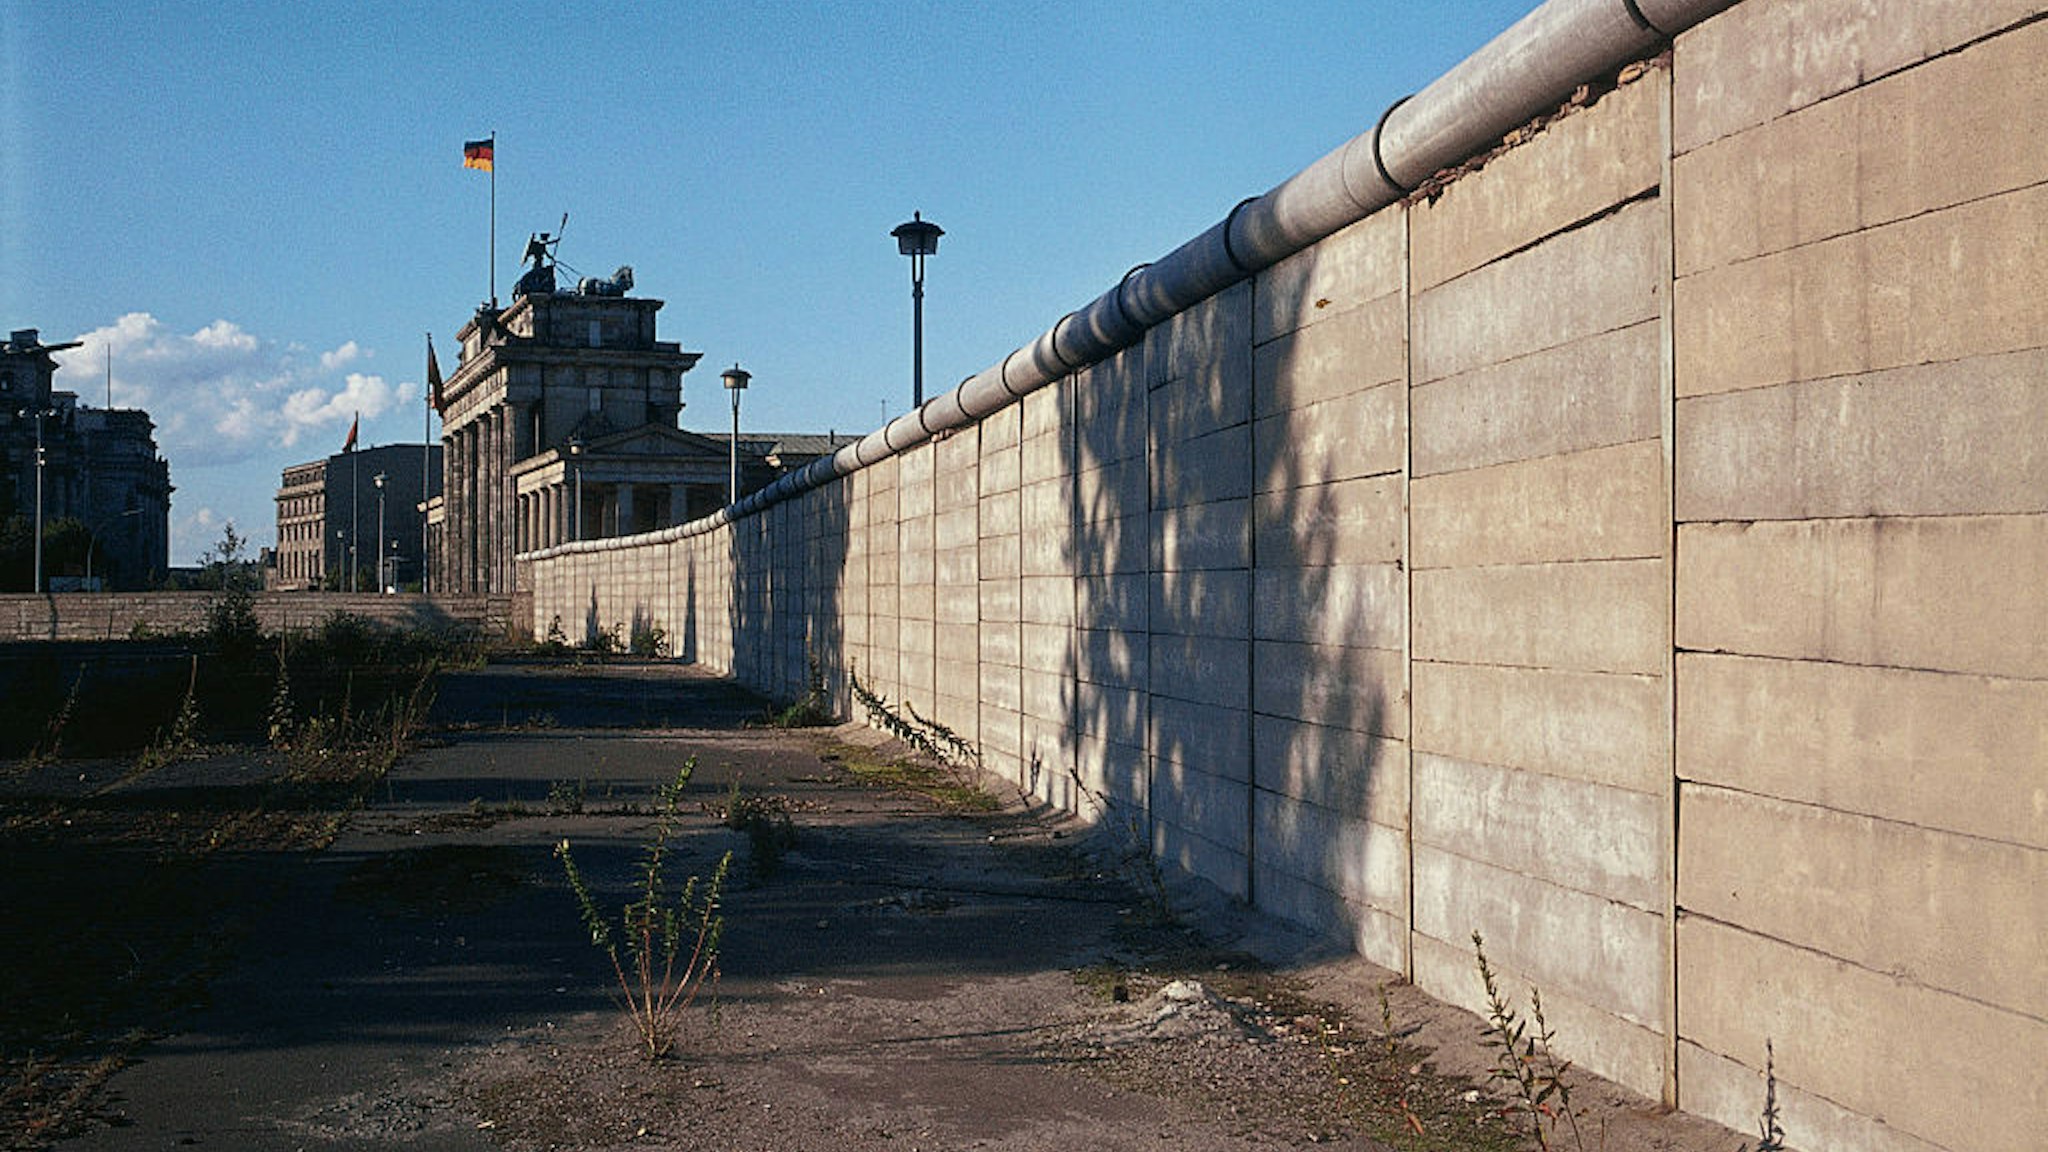 Berlin Wall near Brandenburg Gate.